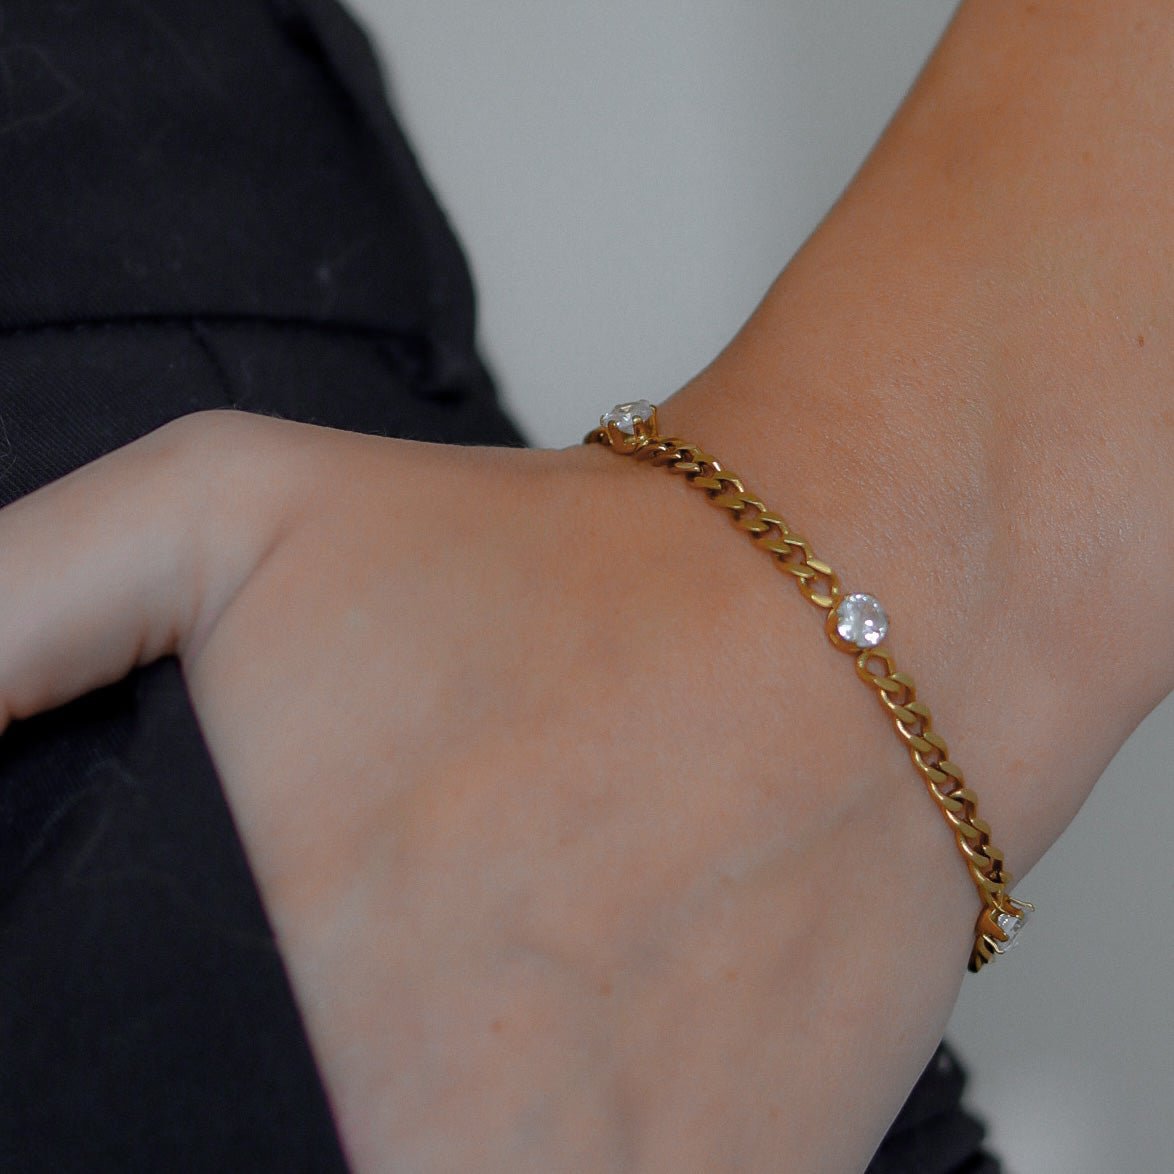 Nayva Stone Bracelet - Namaste Jewelry Canada